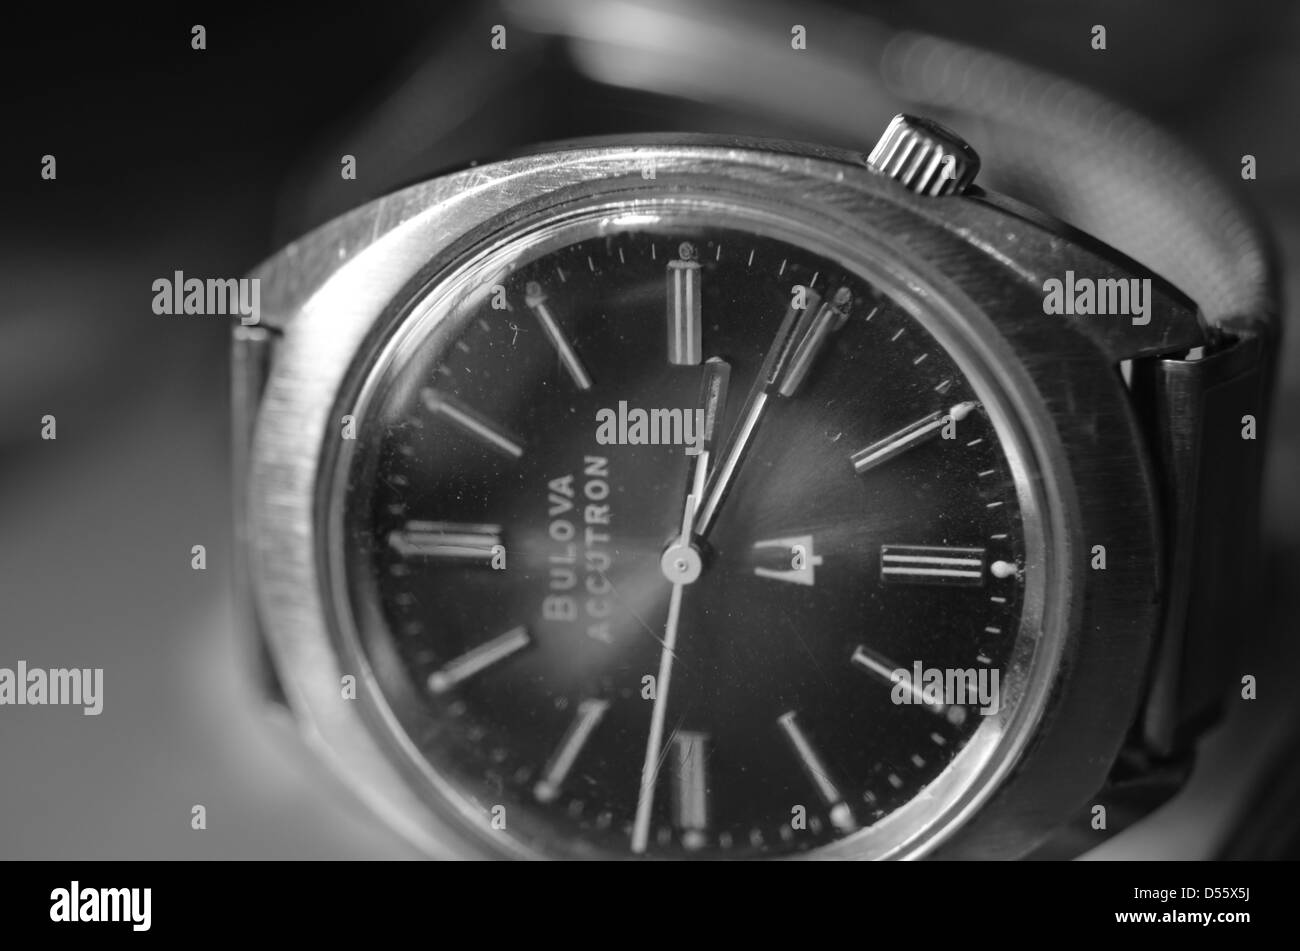 Reloj de pulsera Bulova Accutron Foto de stock